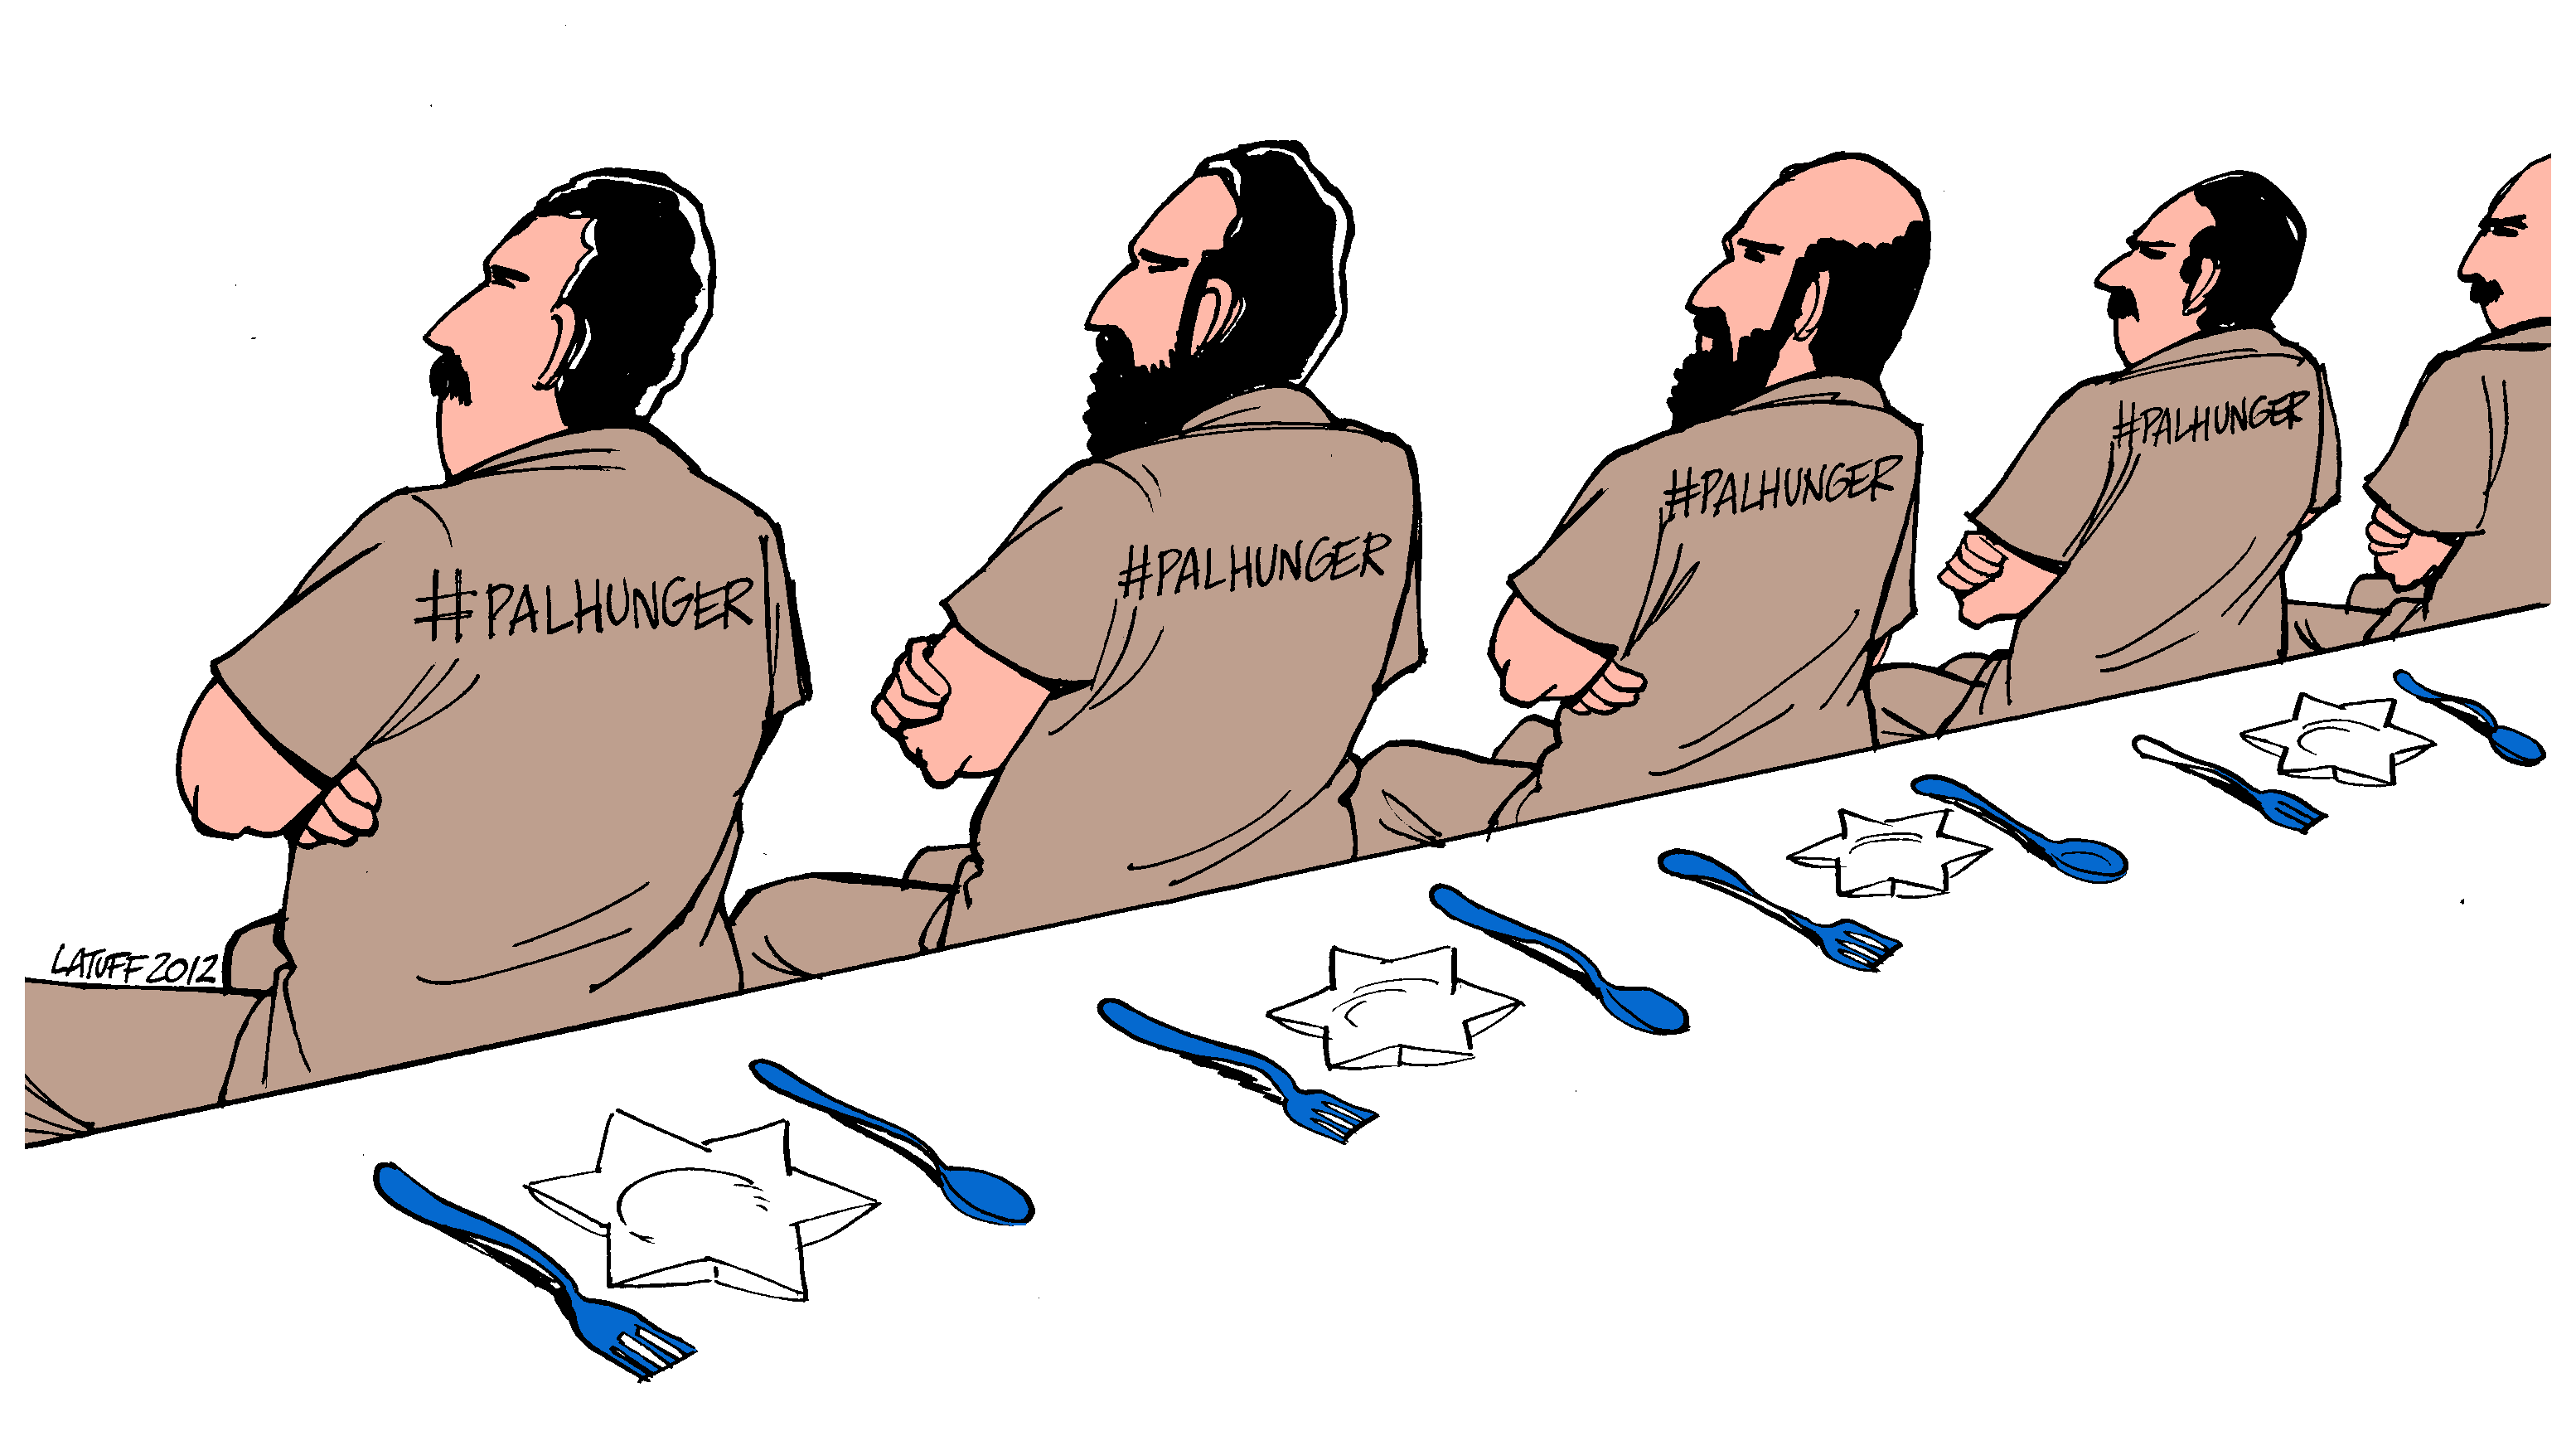 palestinian-hunger-strike-2